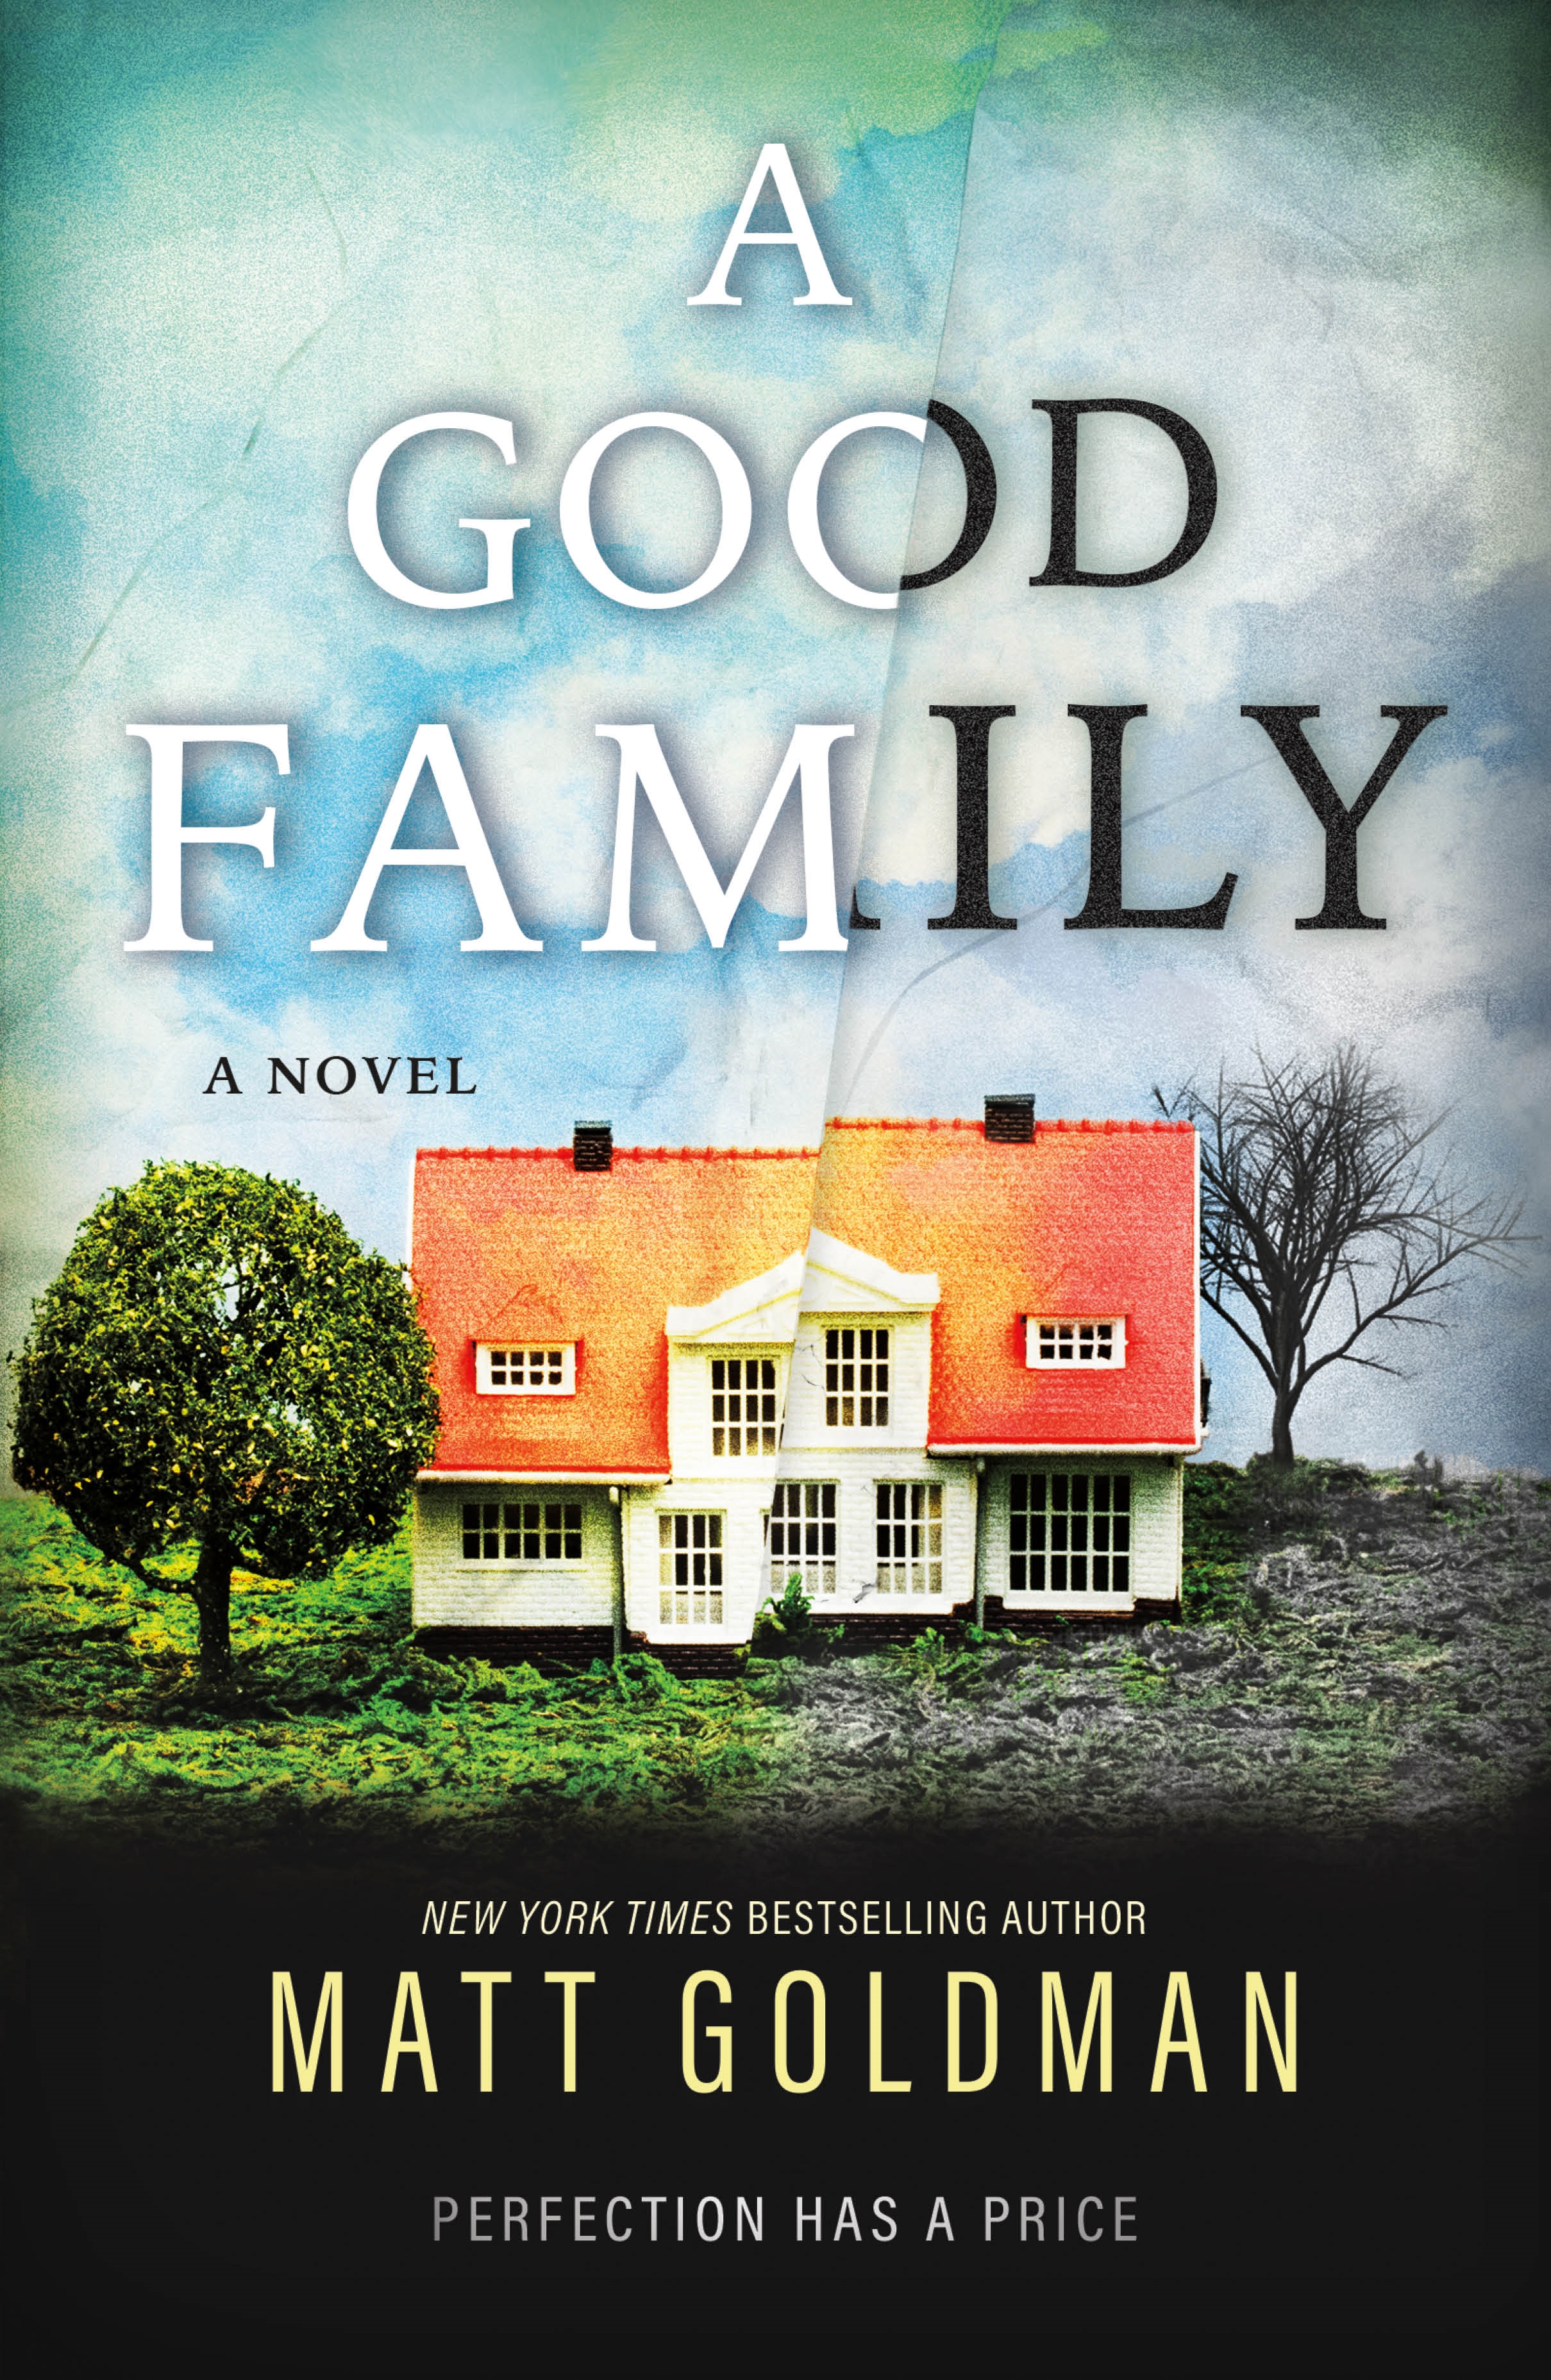 A Good Family : A Novel by Matt Goldman